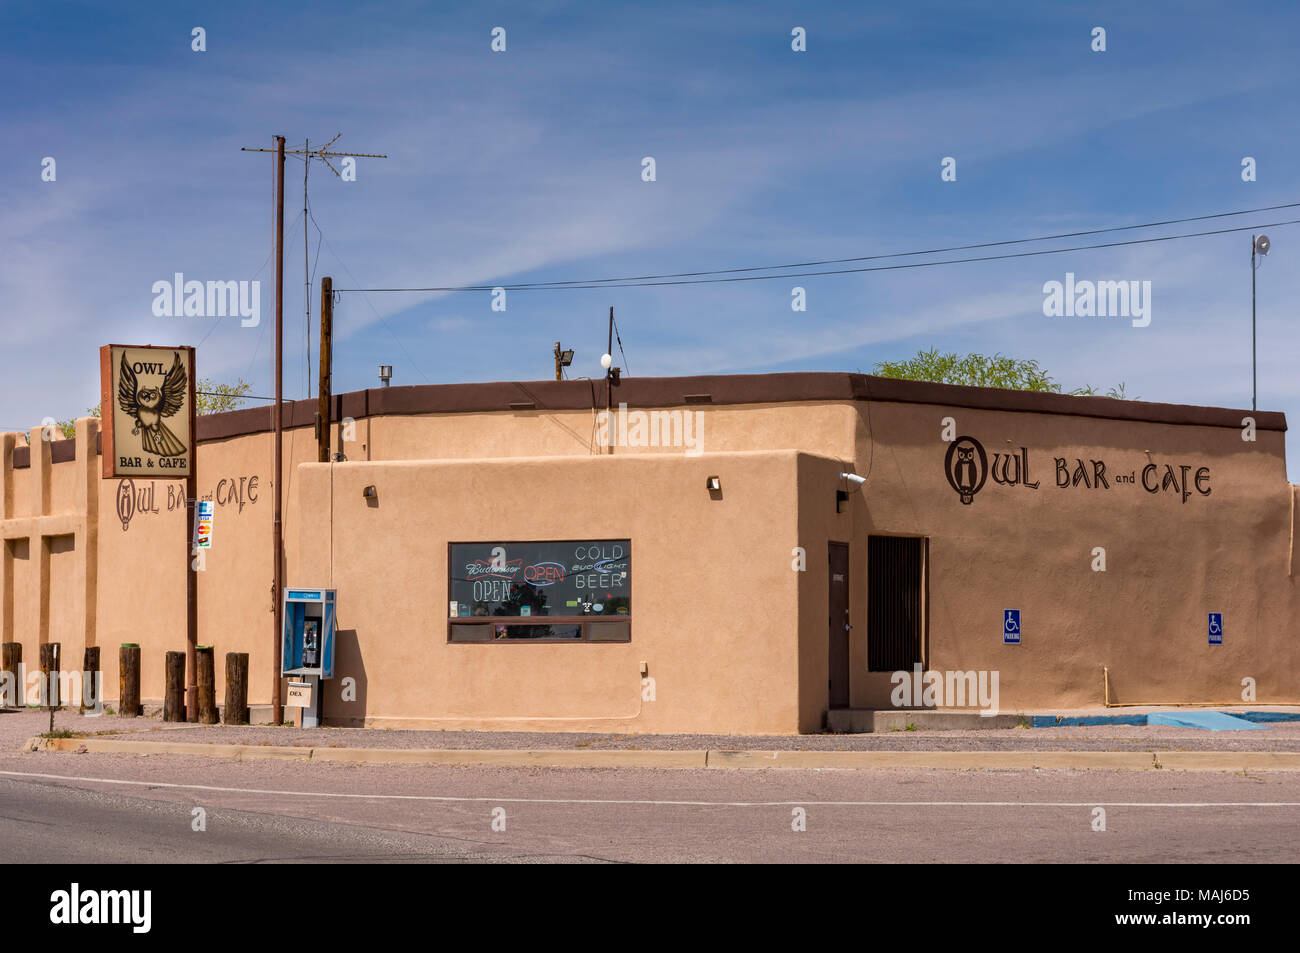 Il Gufo Bar e Café famoso per il verde cile cheeseburger situato vicino al sito della Trinità e Apache del Bosque in San Antonio, Nuovo Messico, STATI UNITI D'AMERICA Foto Stock